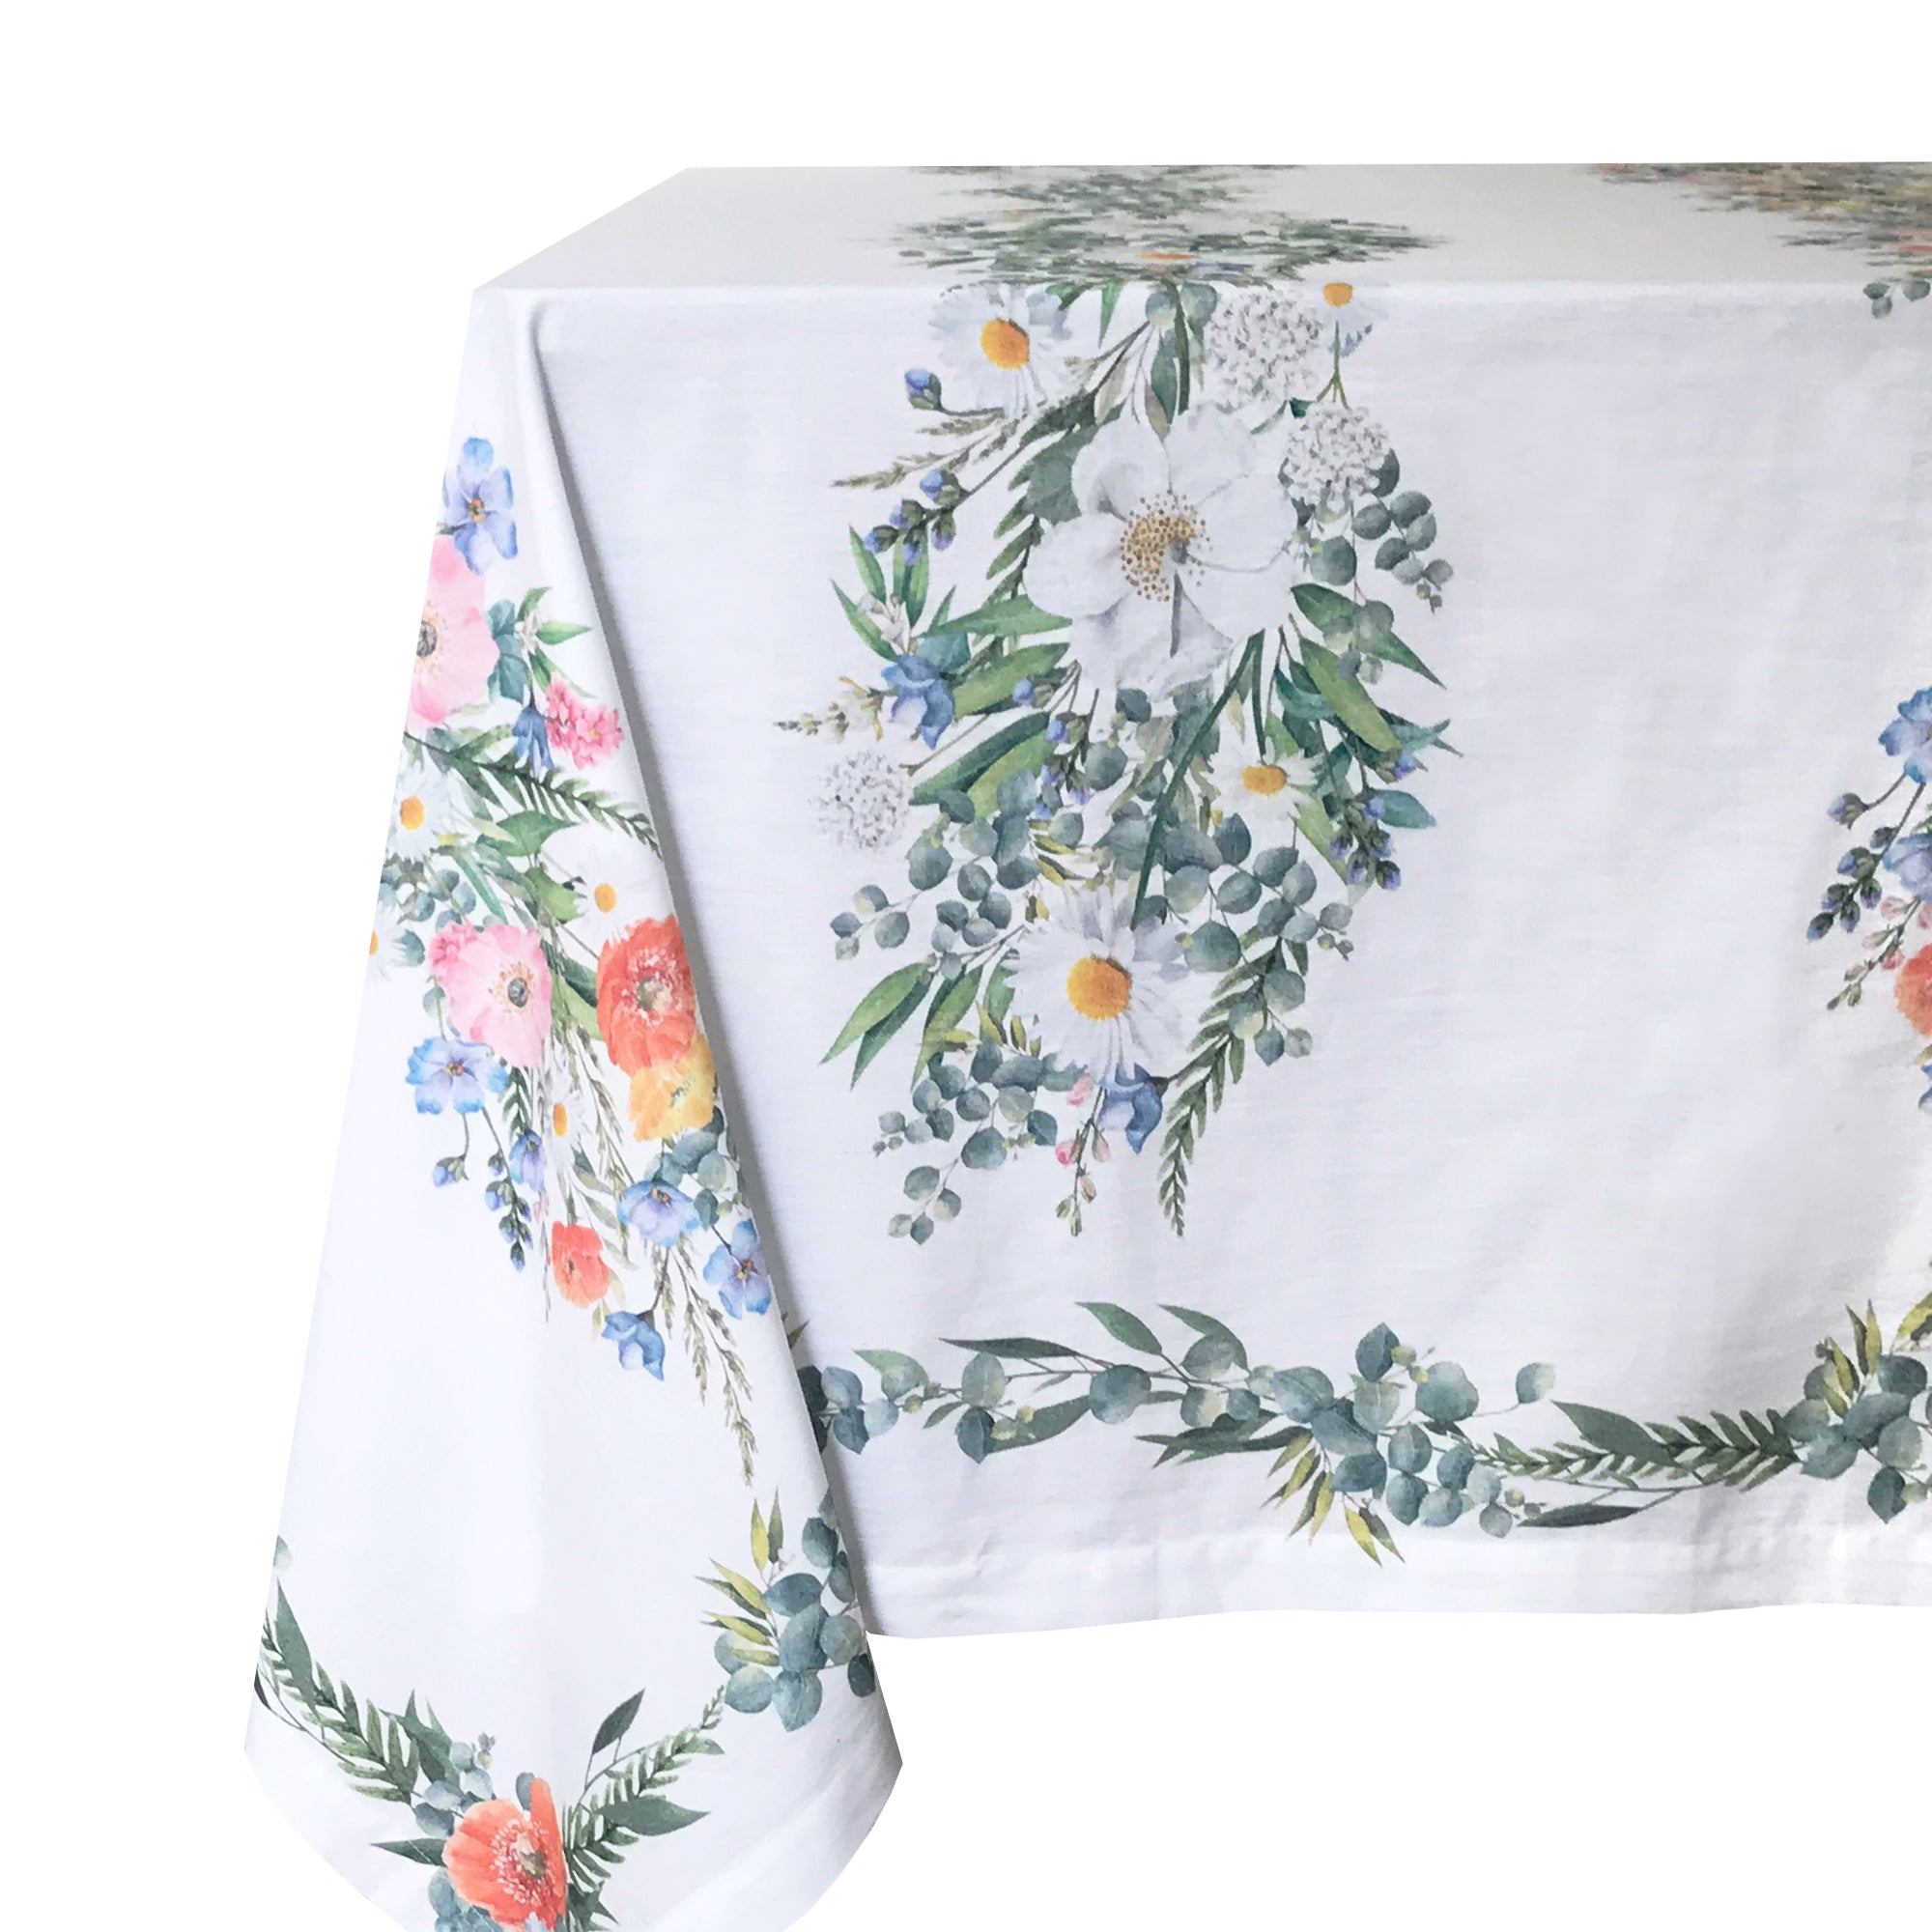 English Garden Vintage Print Cotton Tablecloth